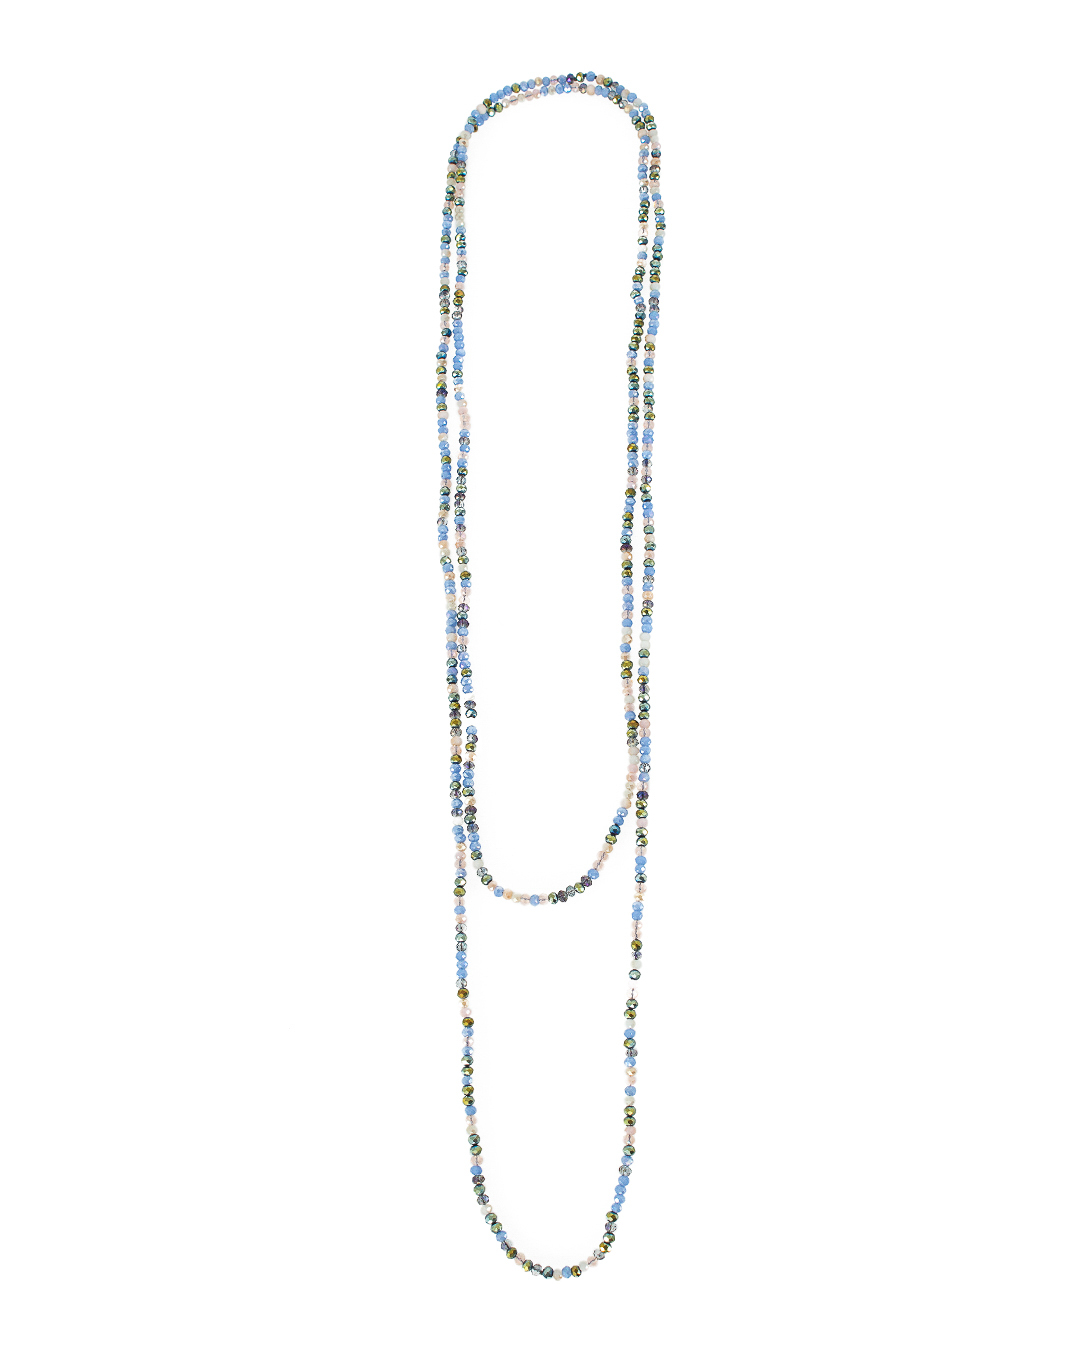 ожерелье Marina Fossati A35 голубой+бежевый+разноцветный UNI, размер UNI A35 голубой+бежевый+разноцветный UNI - фото 1